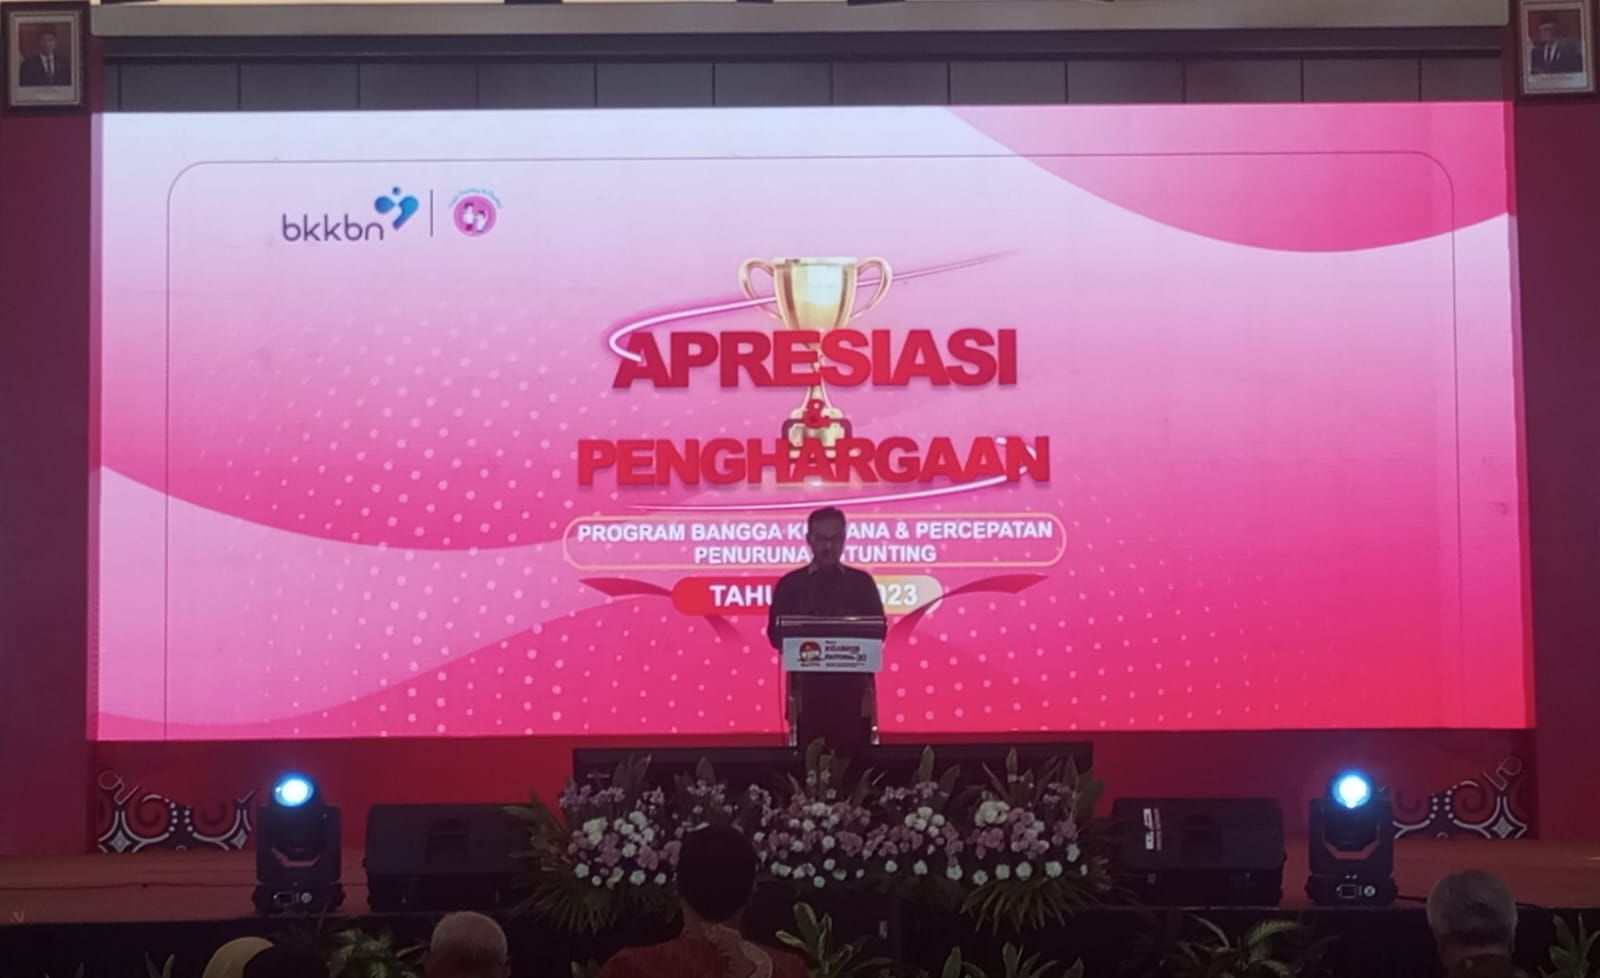 Kepala Badan Kependudukan dan Keluarga Berencana Nasional (BKKBN), Dr. (H.C) dr. Hasto Wardoyo, Sp.O.G (K), dalam acara Apresiasi dan Penghargaan Program Bangga Kencana dan Percepatan Penurunan Stunting Tahun 2023 di Wyndham Opi Hotel Palembang, Sumatra Selatan, Selasa 4 Juli 2023.